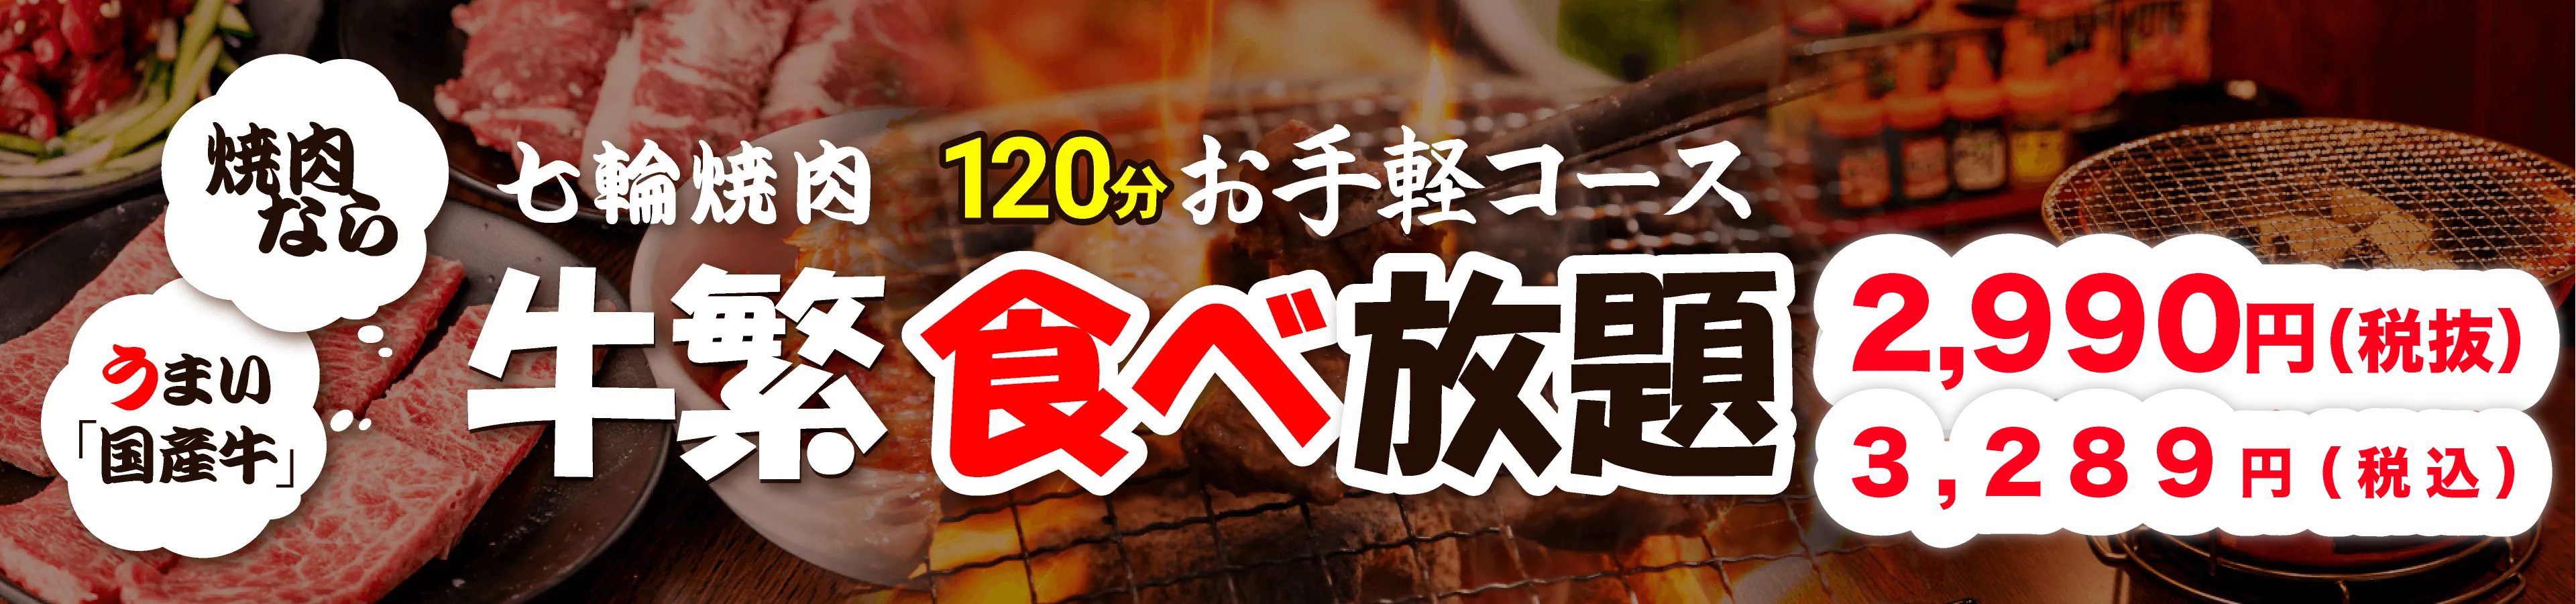 食べ放題焼肉 お手軽コース120分 税抜2,980円